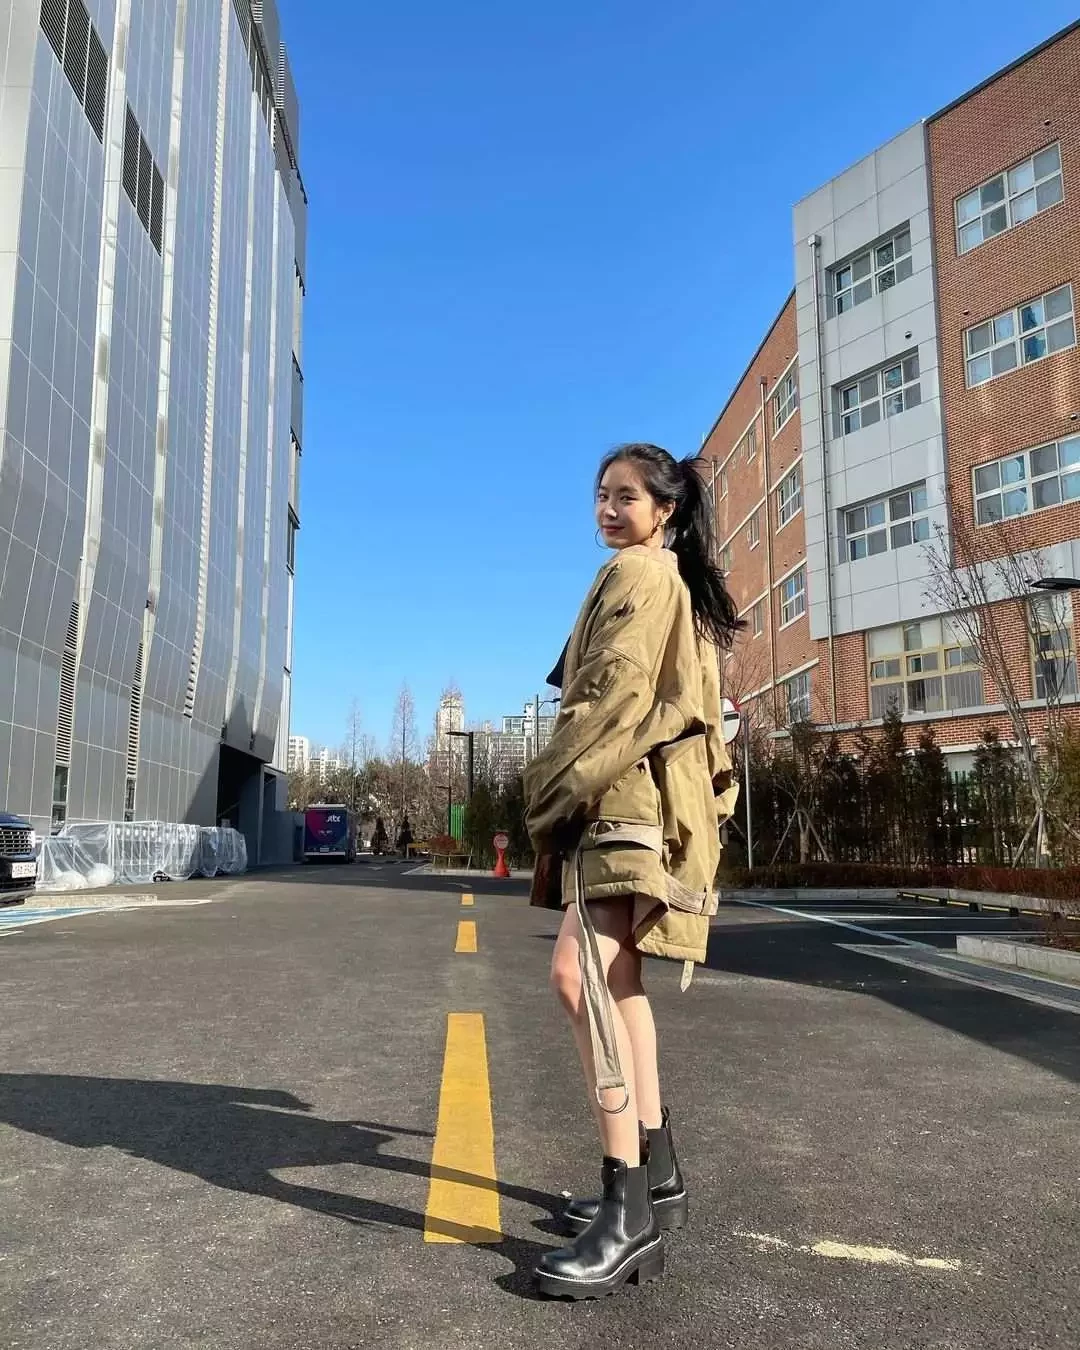 當天，孫娜恩透過個人instagram 公開了多張照片，更標記了 LV 註明是廣告。綁著高馬尾搭配 LV 的卡其色夾克展現出又酷又甜美的獨特風格。 